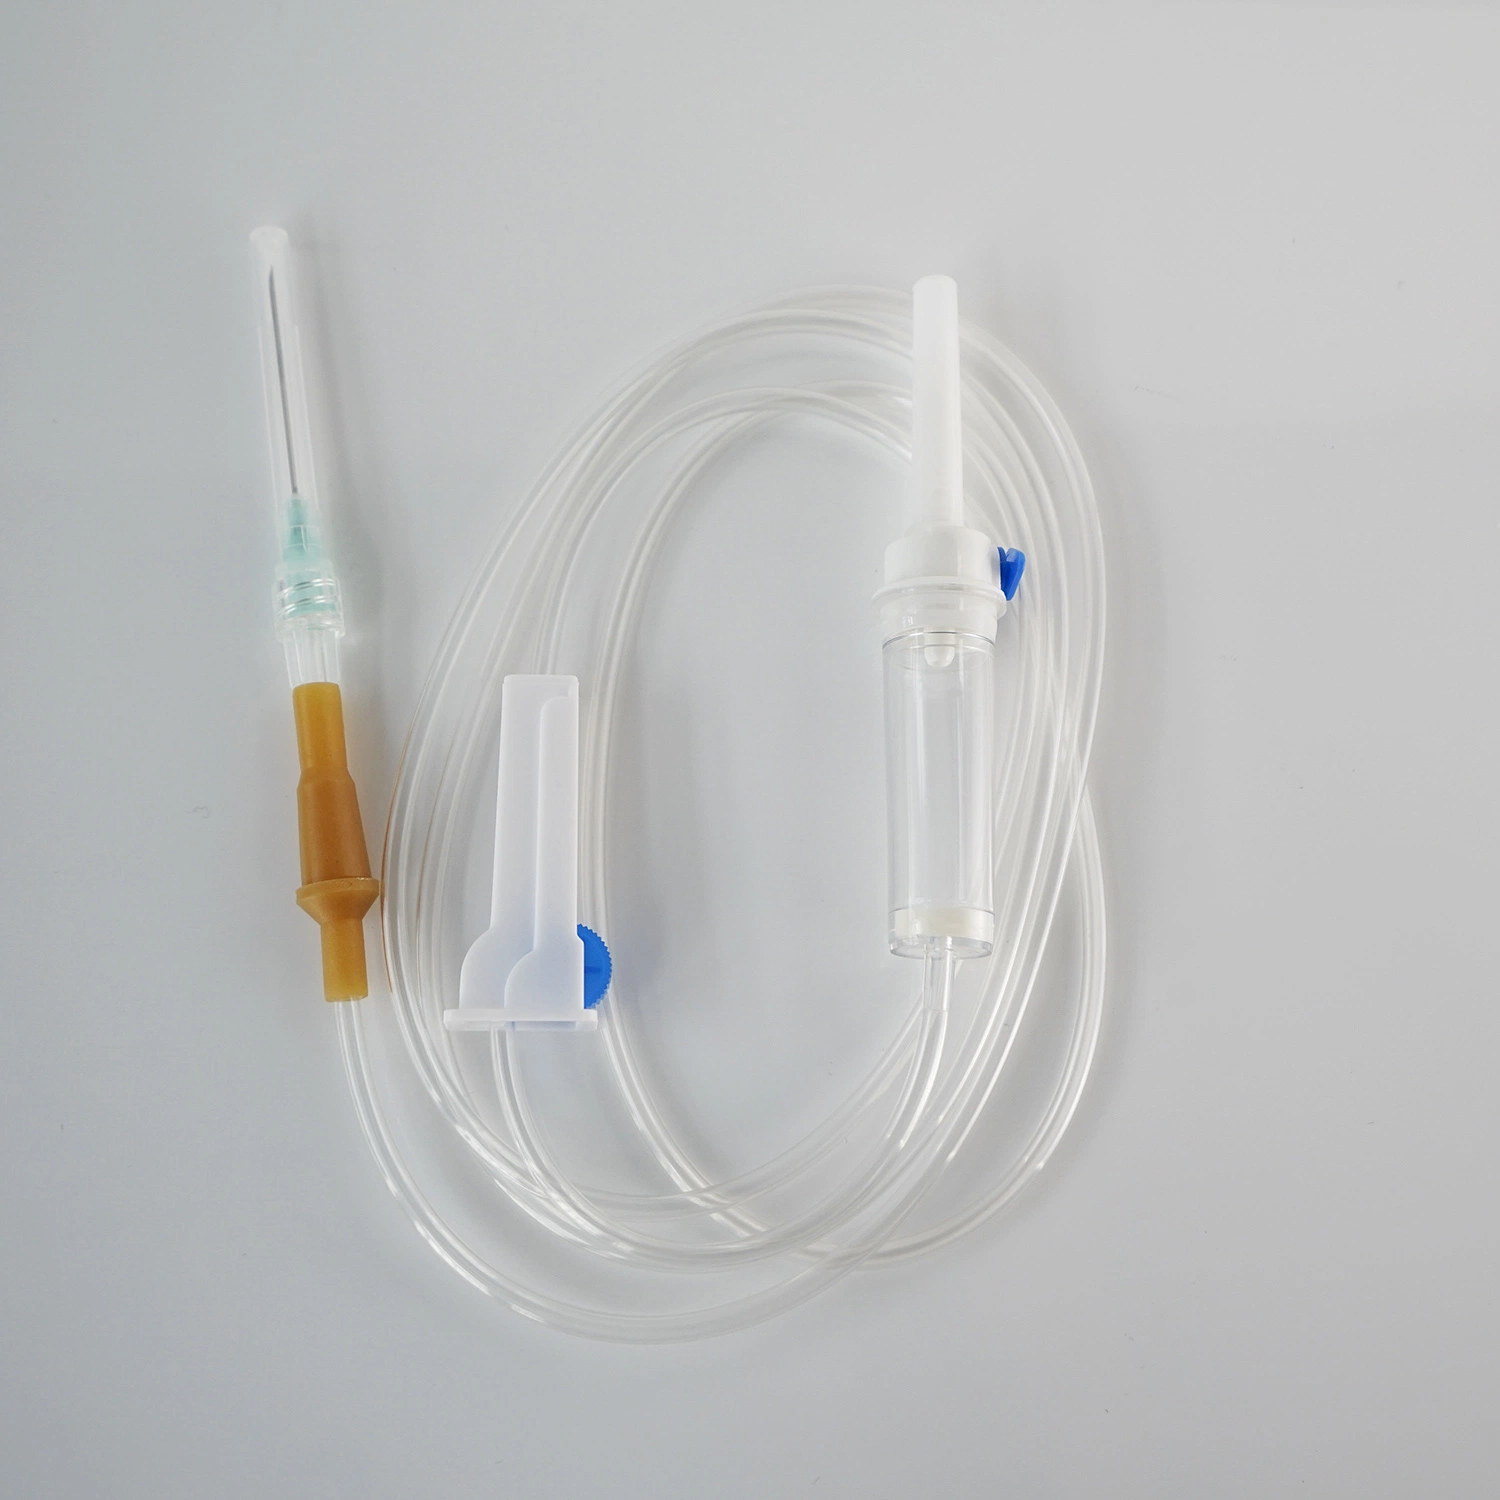 Ensemble de perfusion jetable IV stérilisé pour adulte, équipement médical souple chirurgical hospitalier, avec aiguille à verrouillage Luer Slip, dispositif d'ensemble de perfusion portable et burette